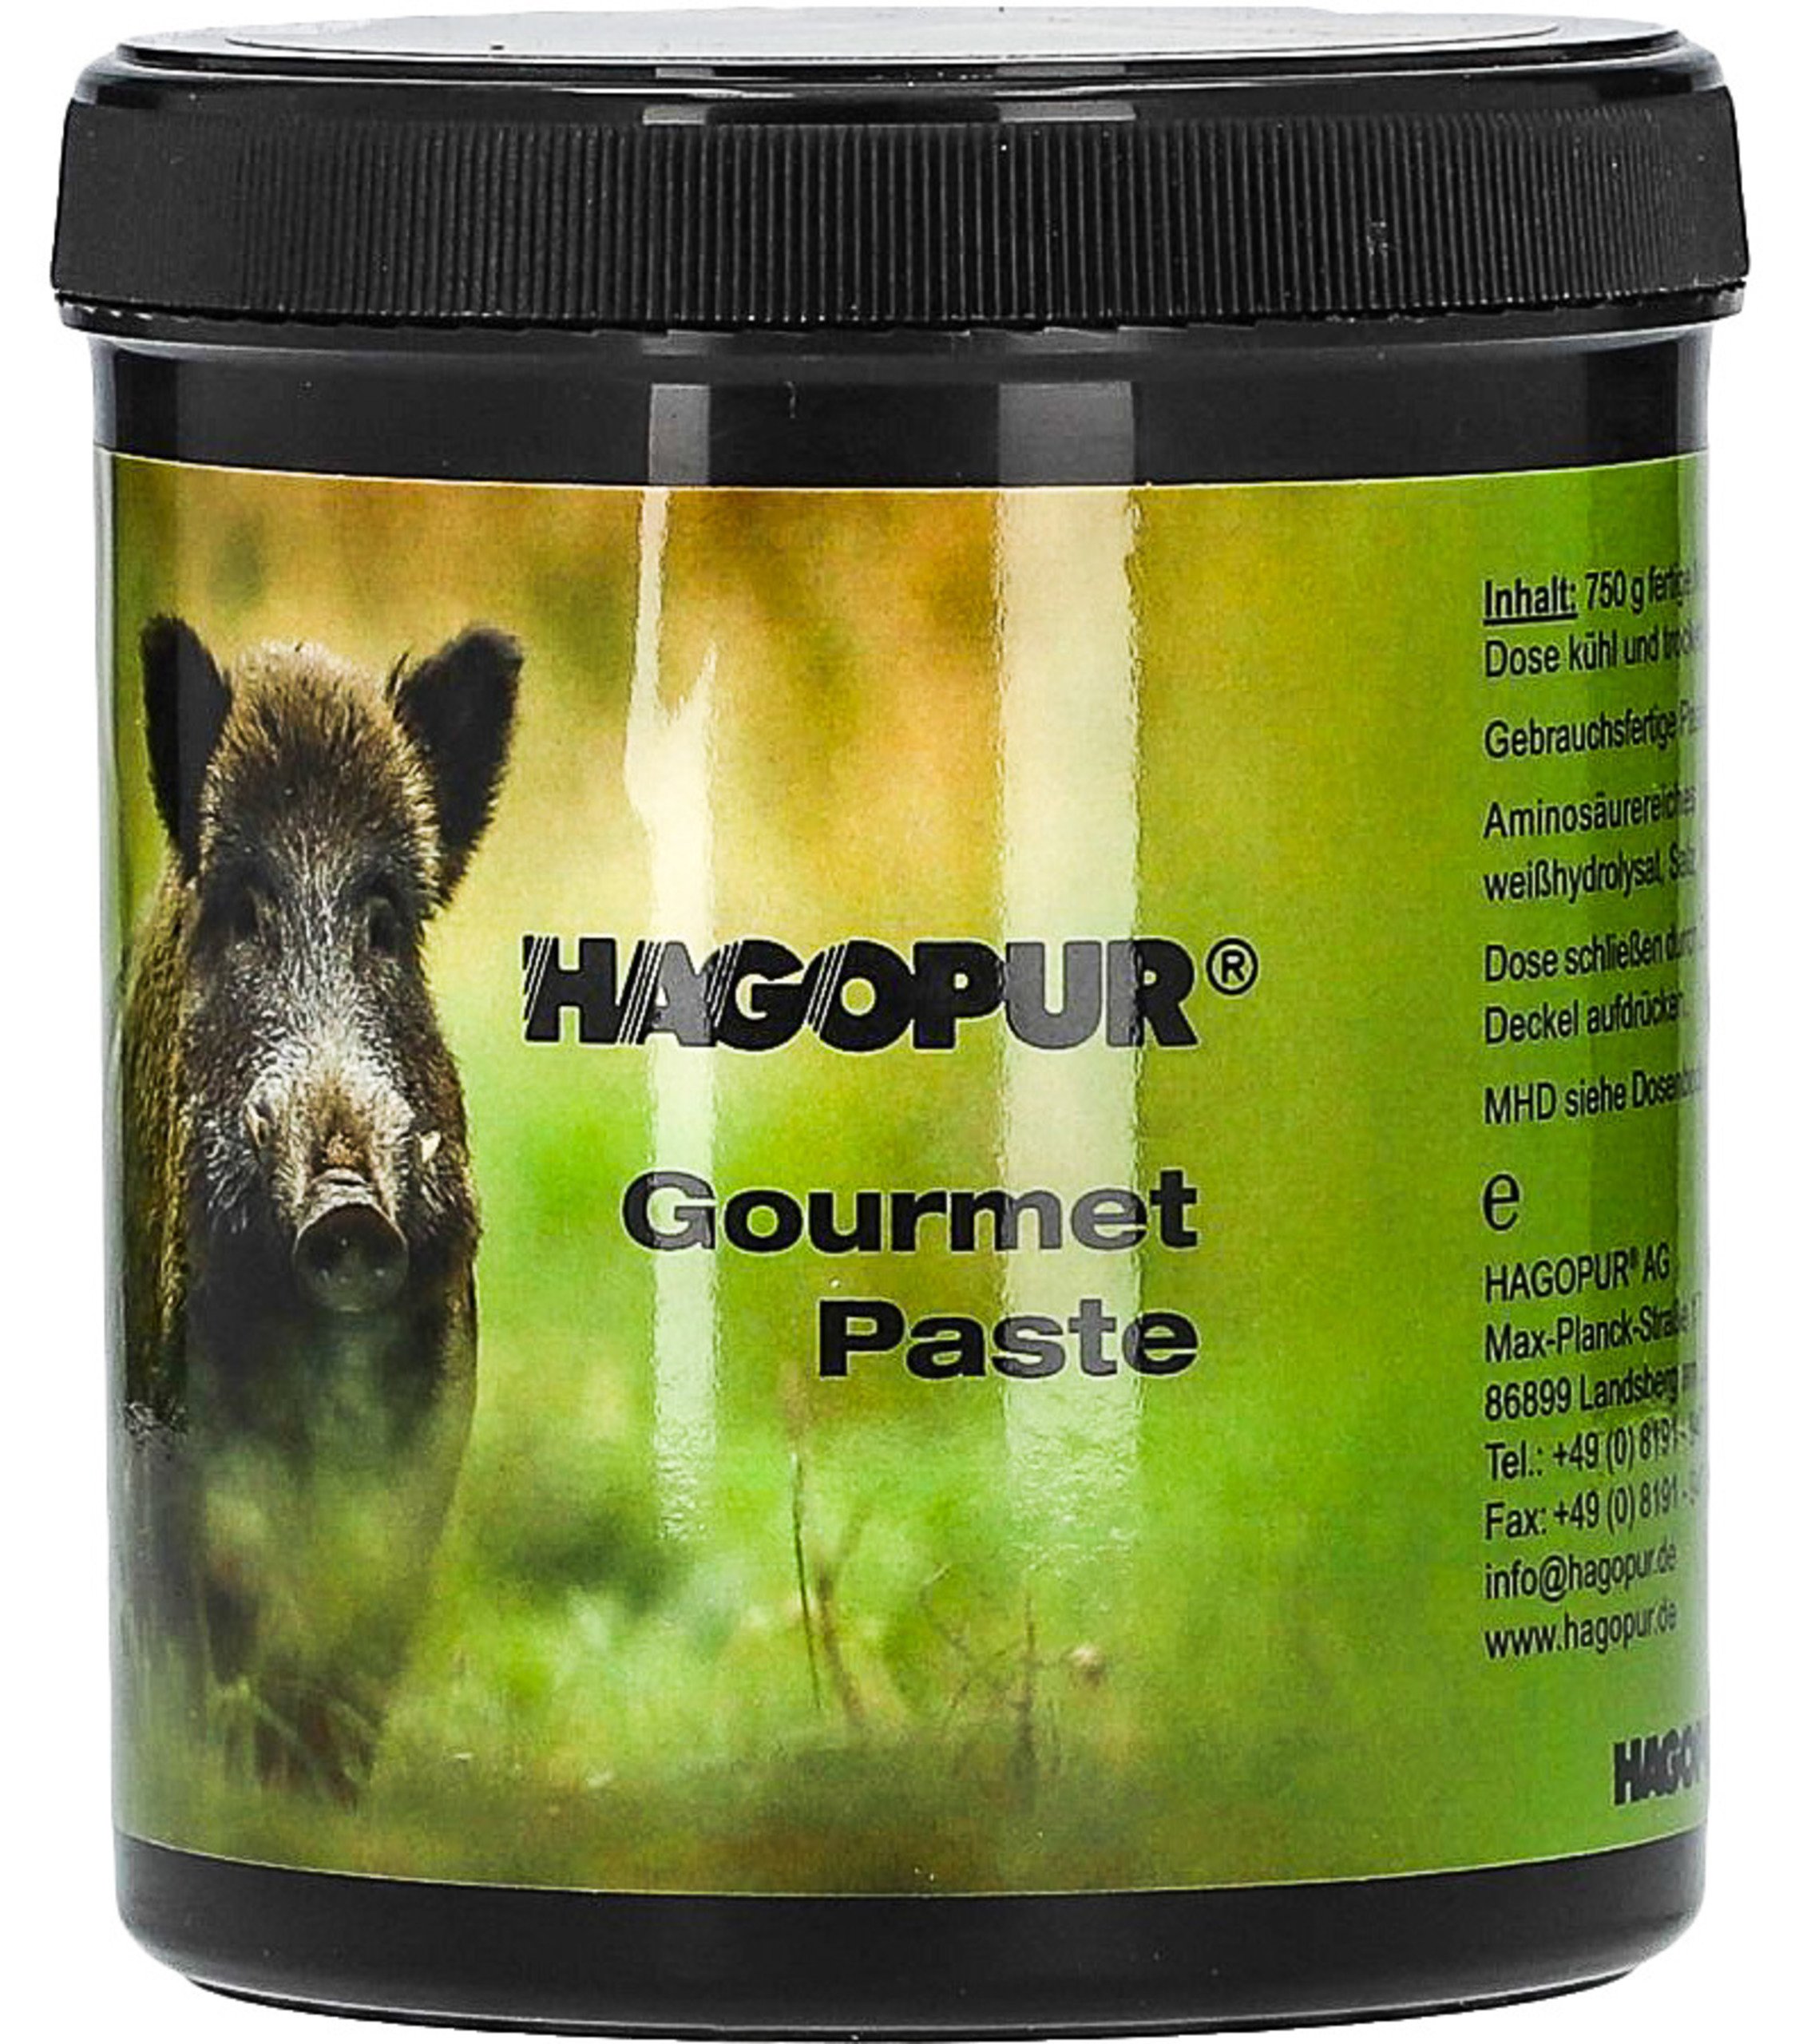 Hagopur Gourmet-Paste 750g